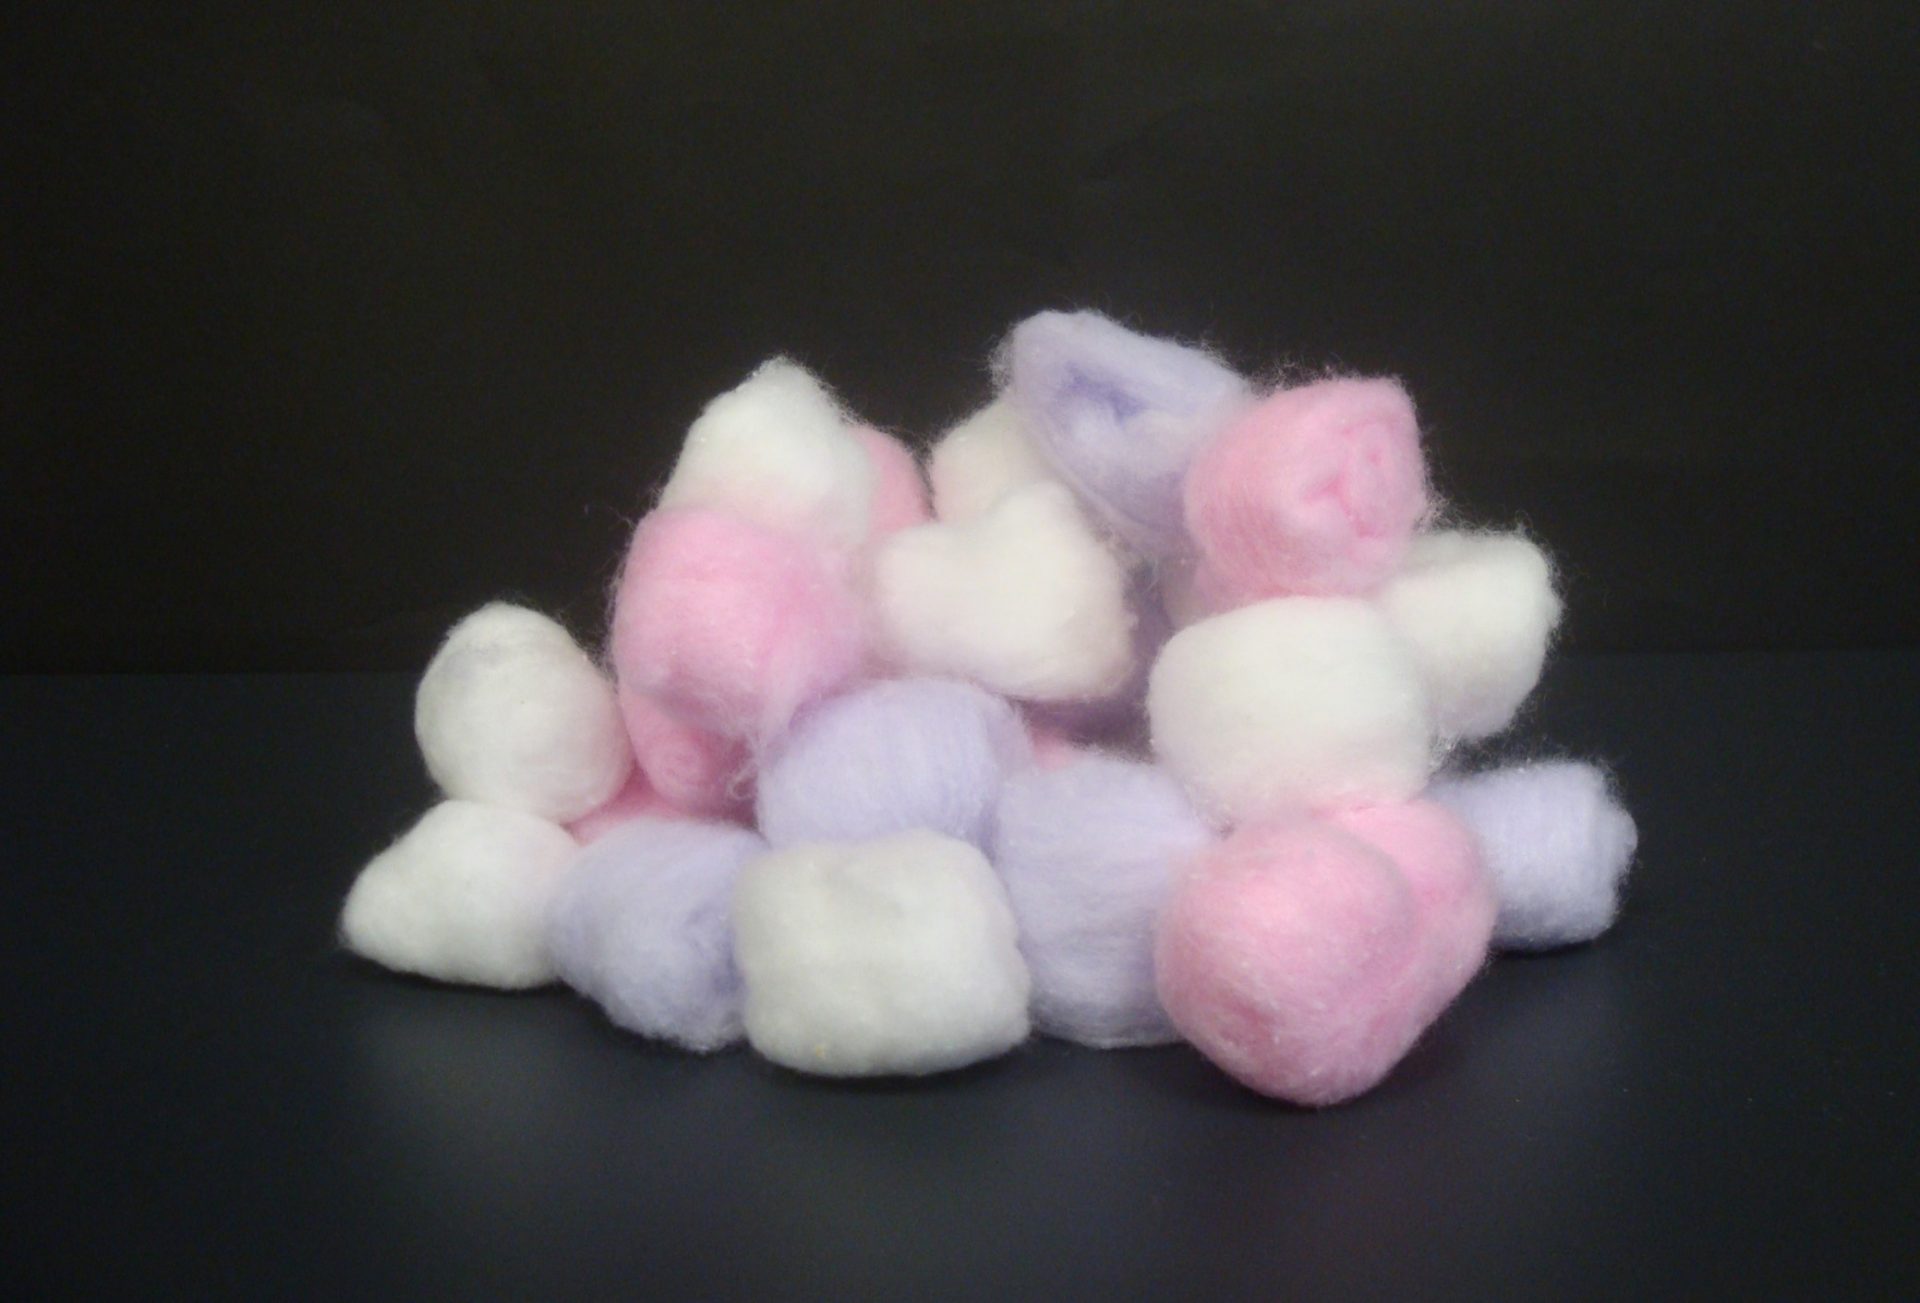 Colored cotton balls